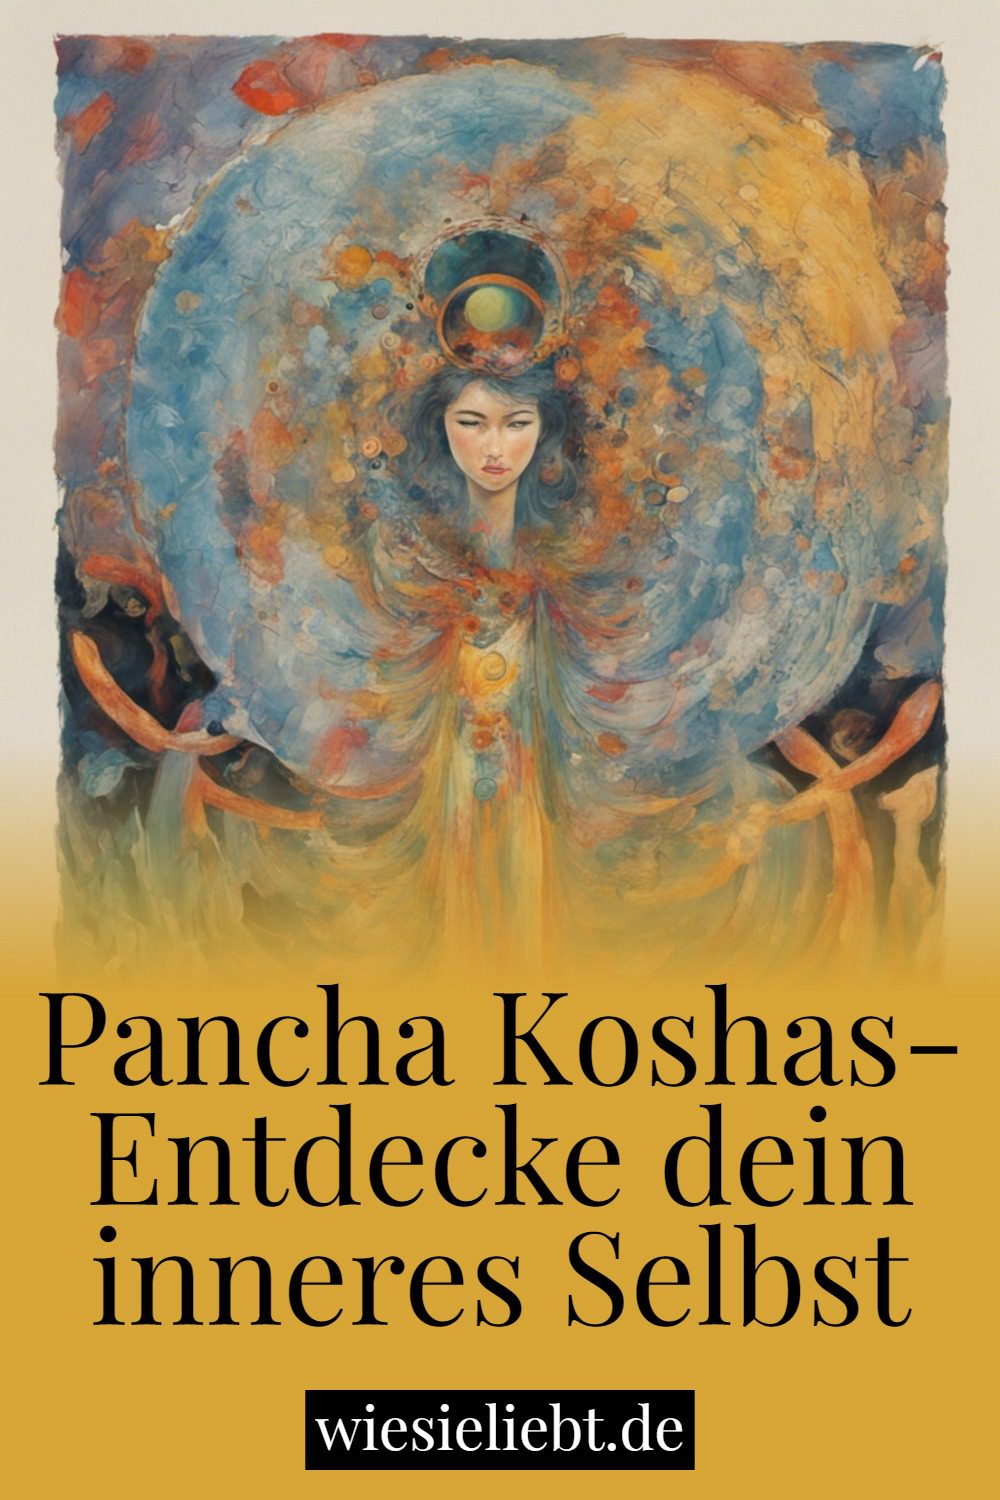 Pancha Koshas- Entdecke dein inneres Selbst